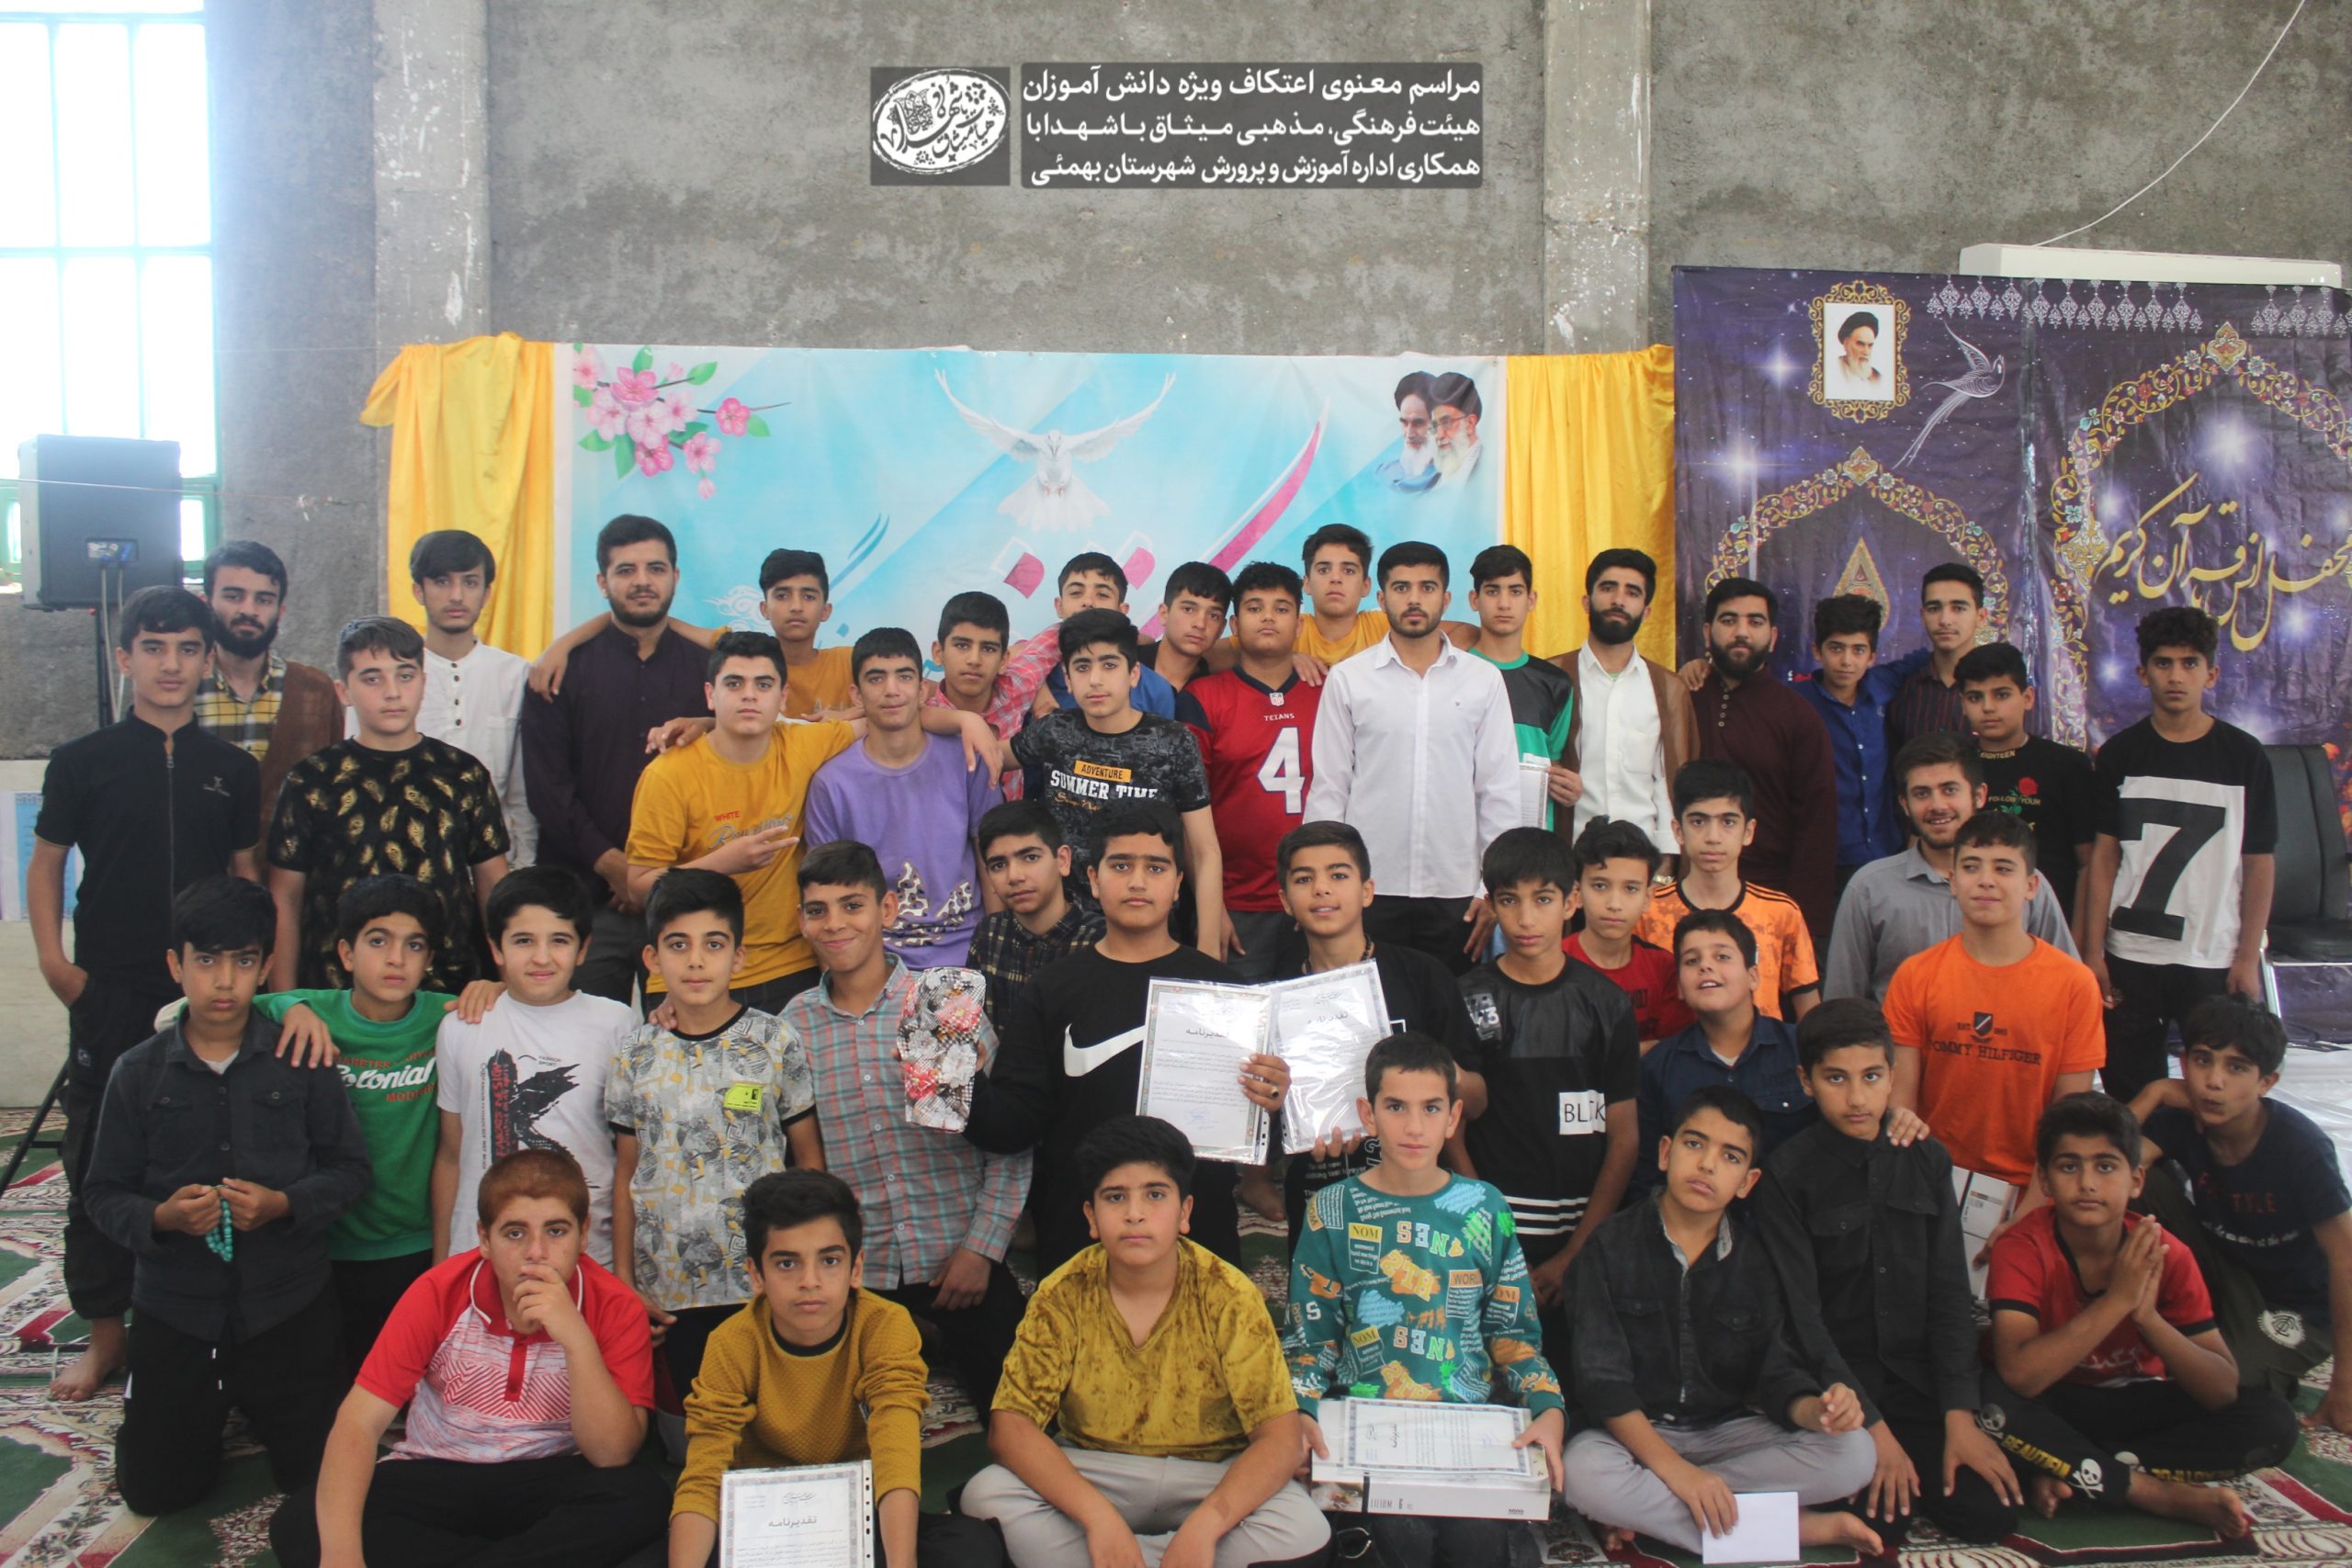 مراسم اعتکاف رمضانیه، با حضور ۴٠ نفر از نوجوانان دهه هشتادی درشهرستان بهمئی